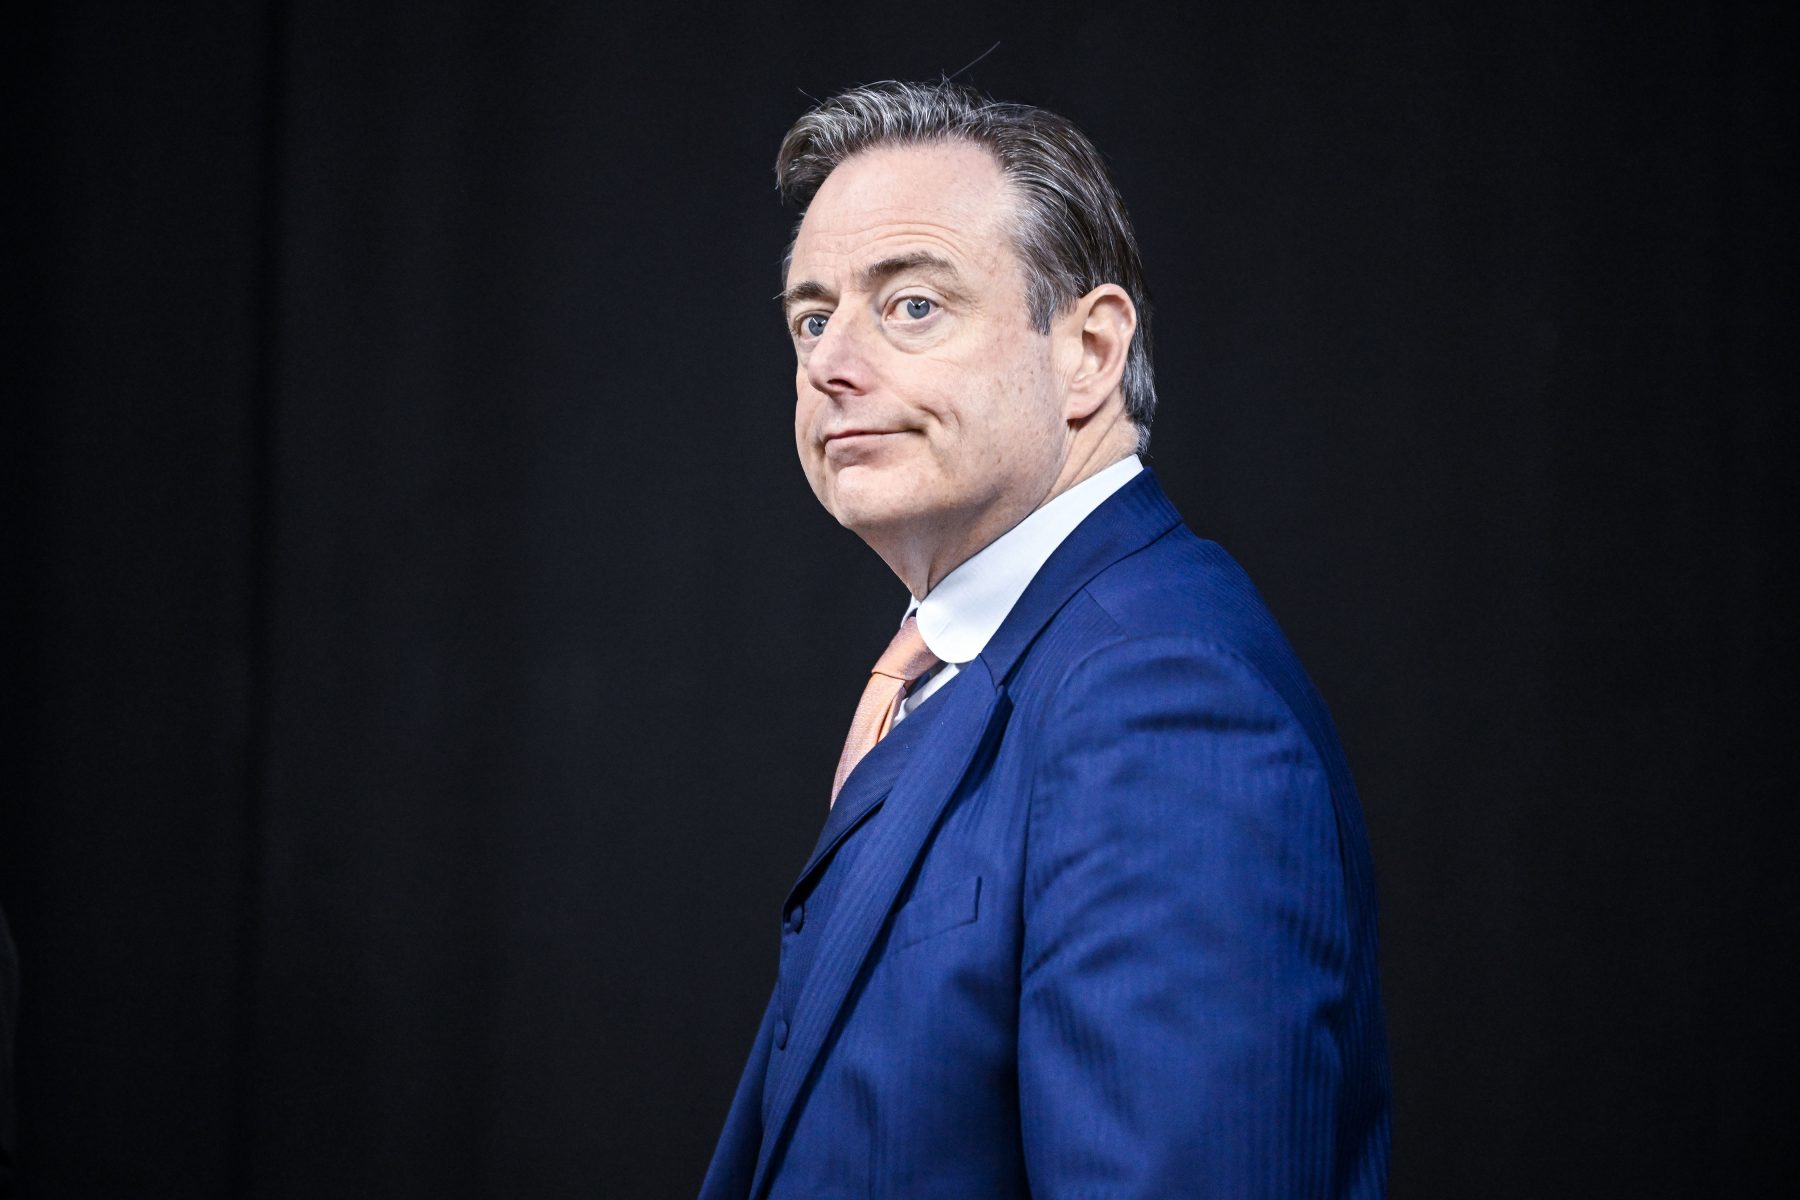 Pour Bart De Wever, la chasse aux « wokistes » l’emporte sur la lutte contre les narcotrafiquants